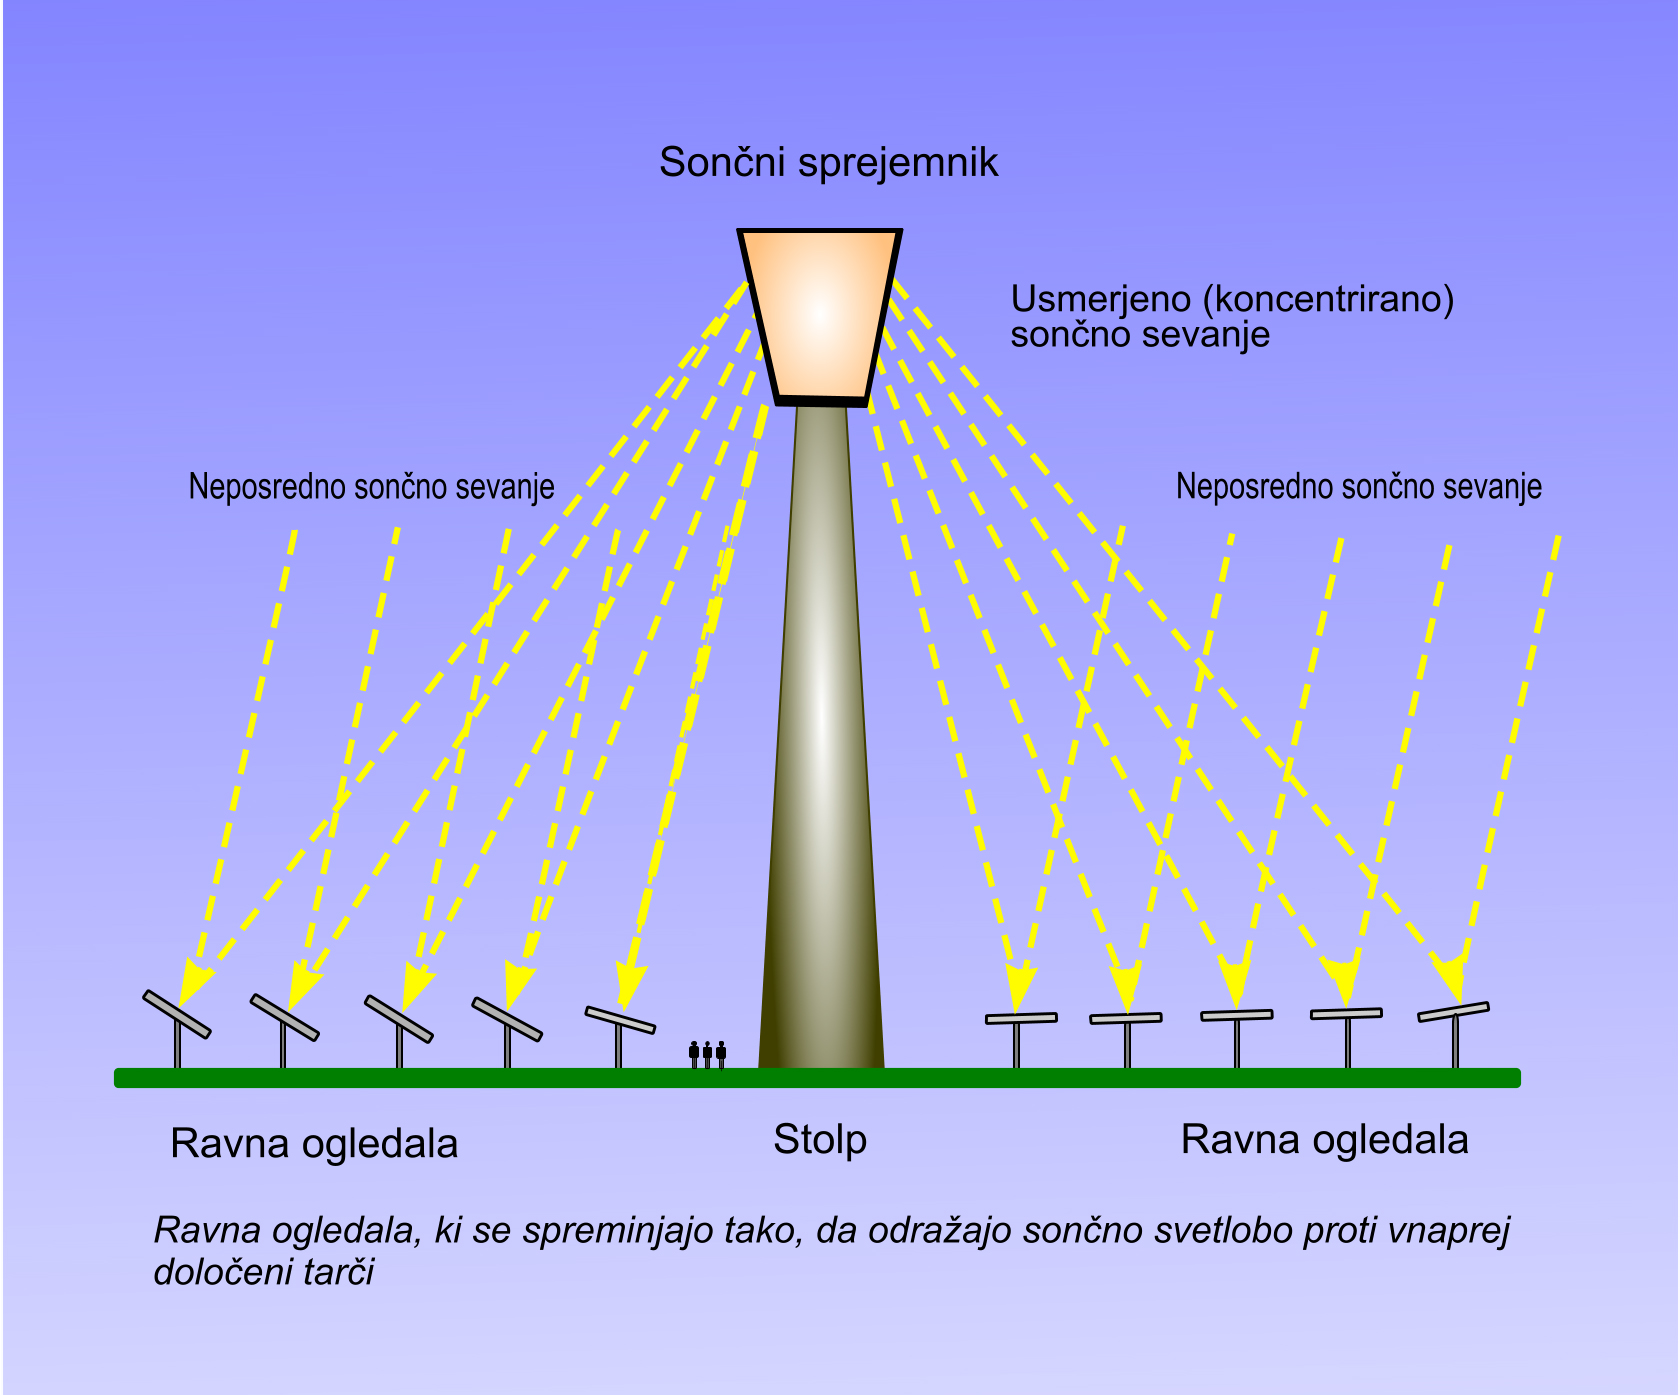 Sončni sprejemniki s solarnim stolpom za pretvarjanje v višje temperature